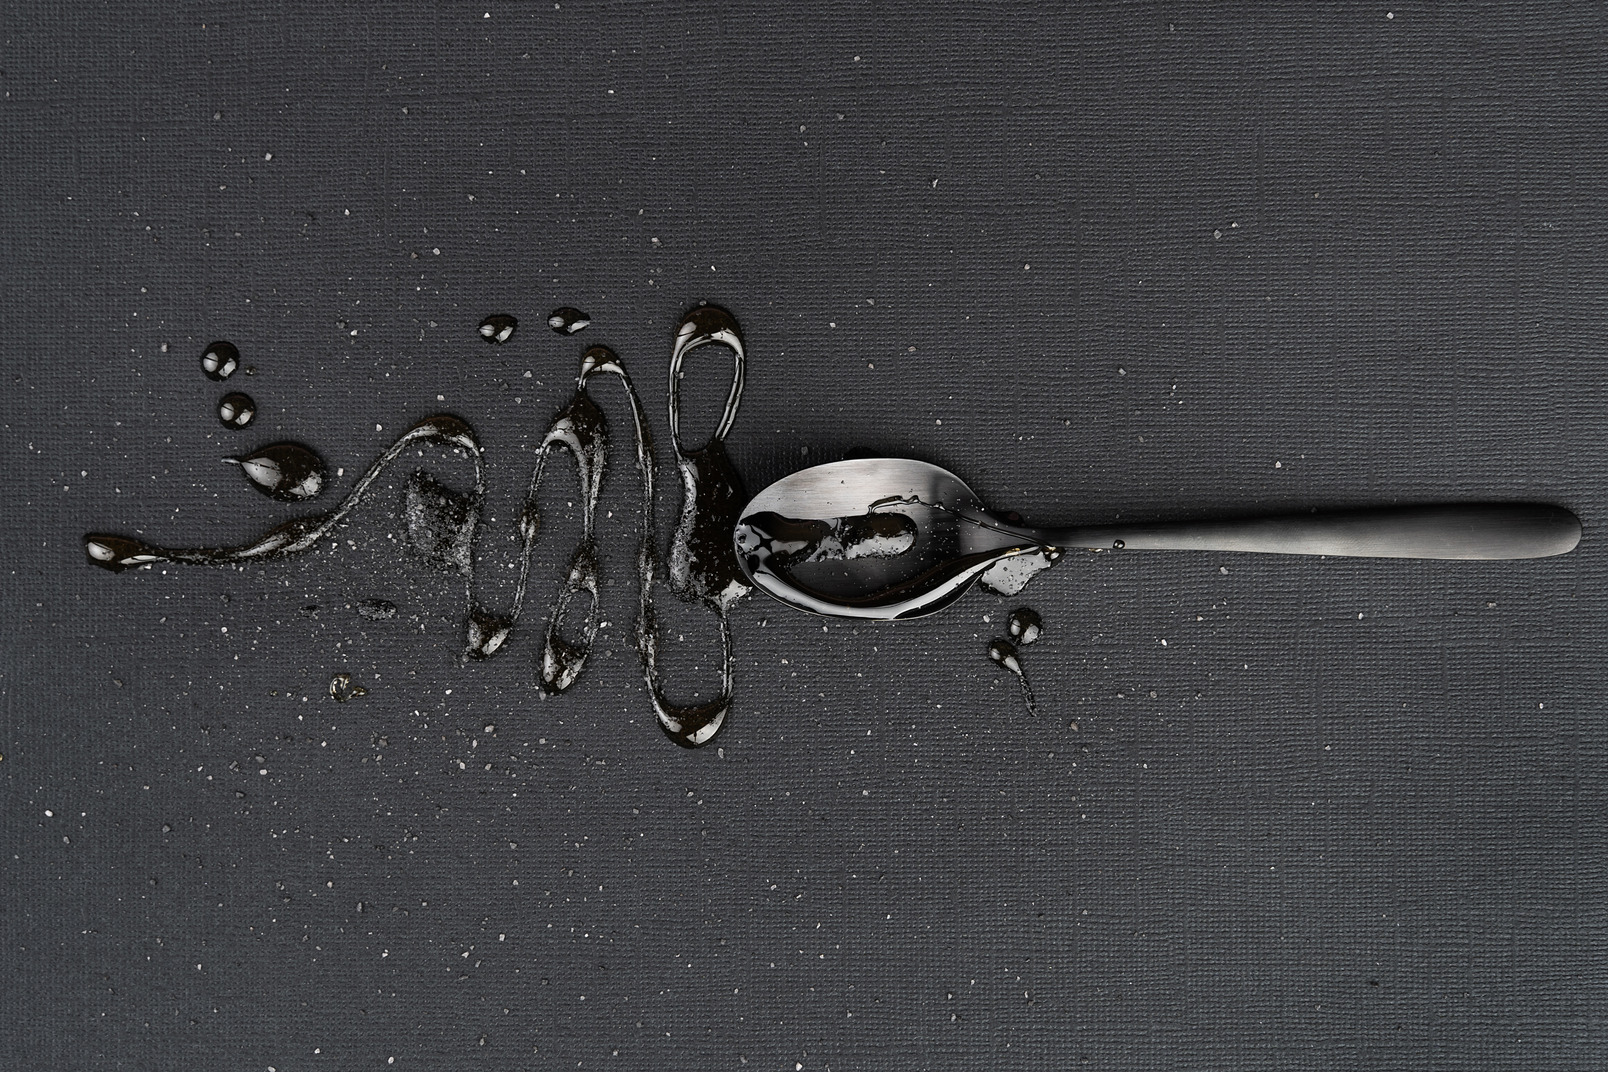 Metal tea spoon with liquid on the black